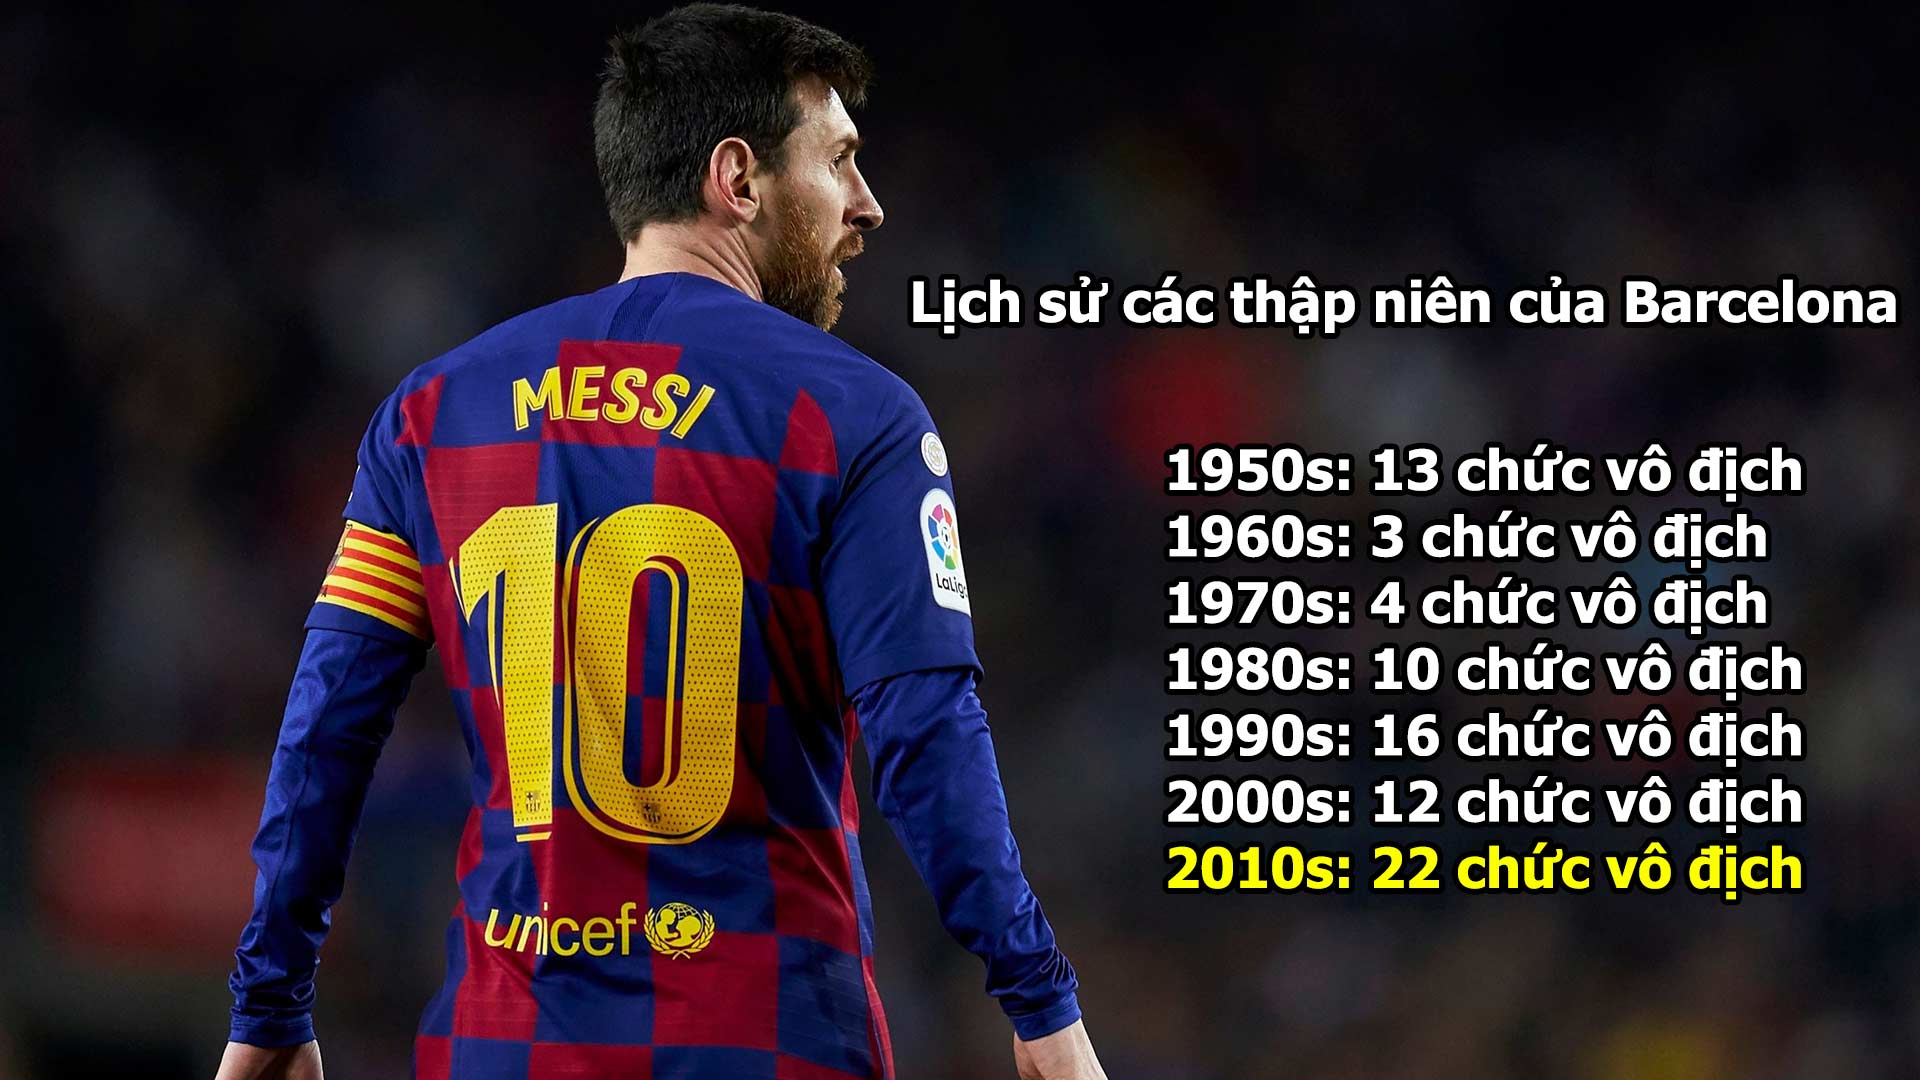 Messi ở lại làm “vua” tại Barca: Tôn vinh những giá trị vĩ đại - 12